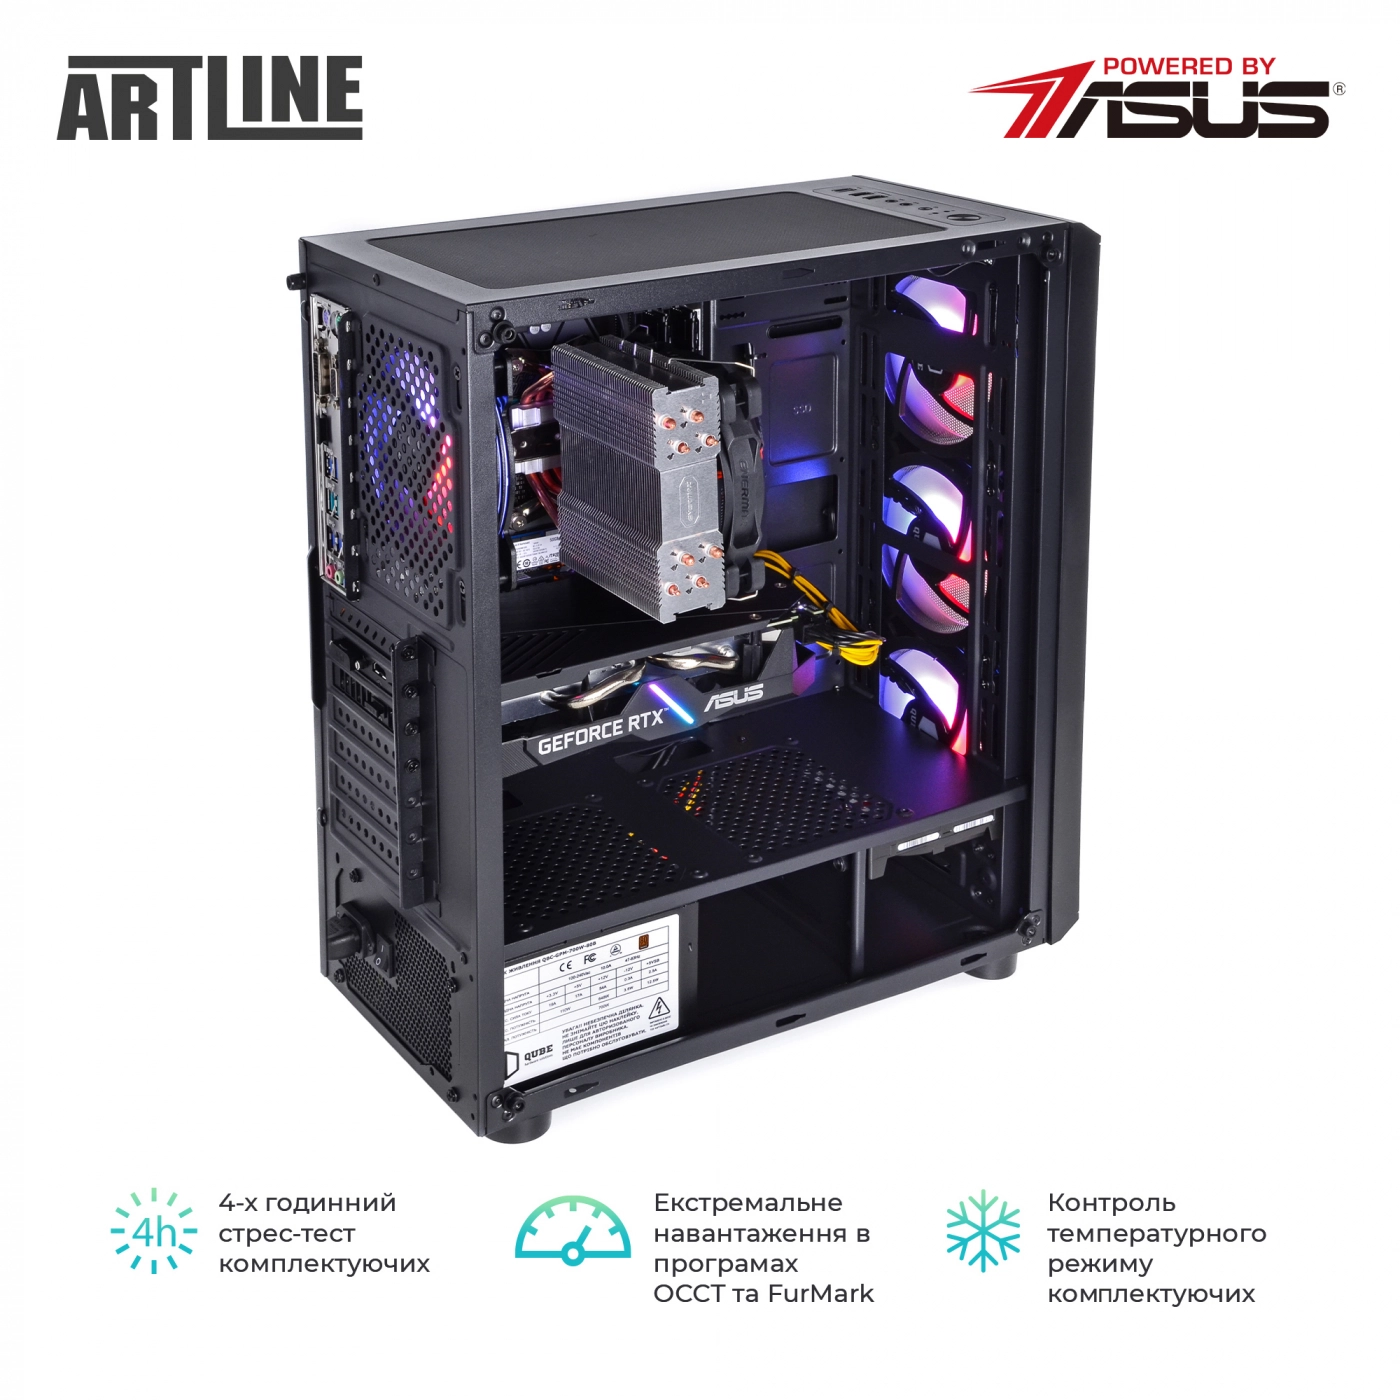 Купить Компьютер ARTLINE Gaming X53v31 - фото 8